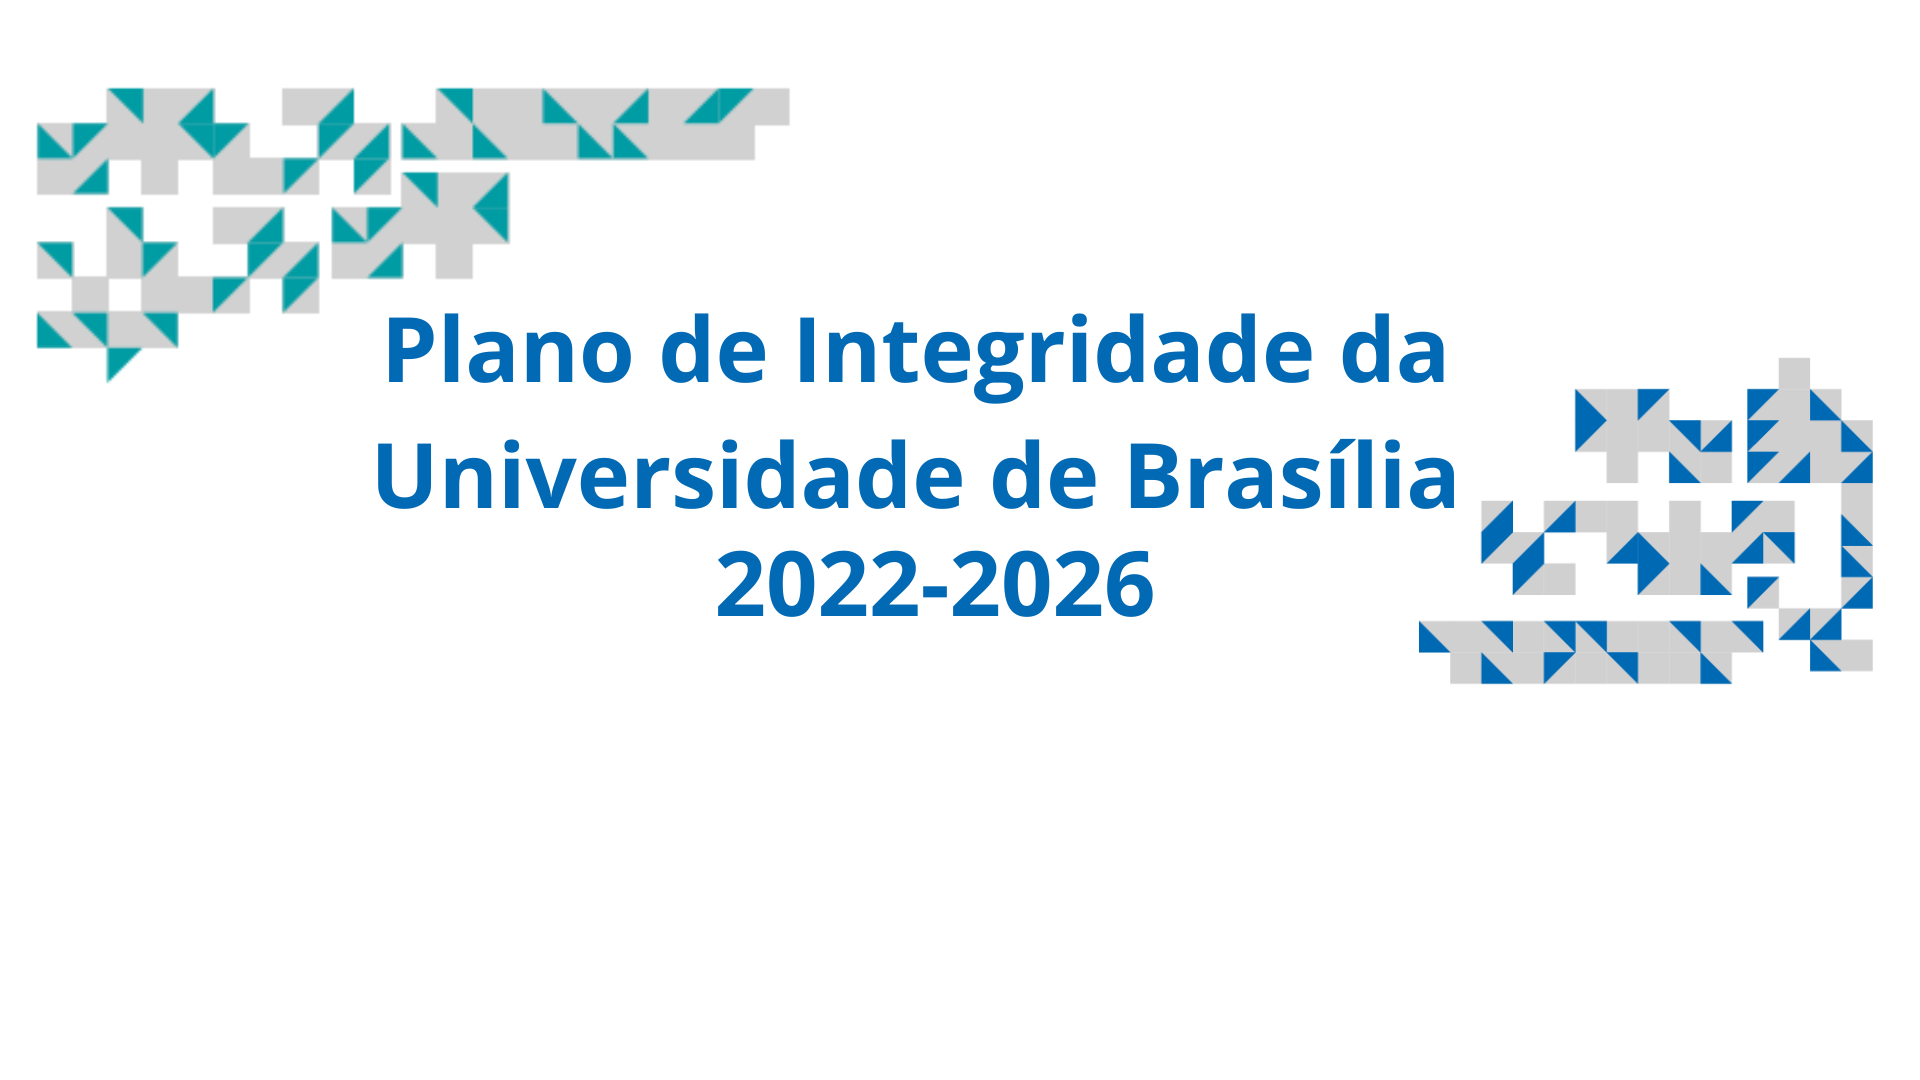 Plano de Integridade da Universidade de Brasília 2022-2026